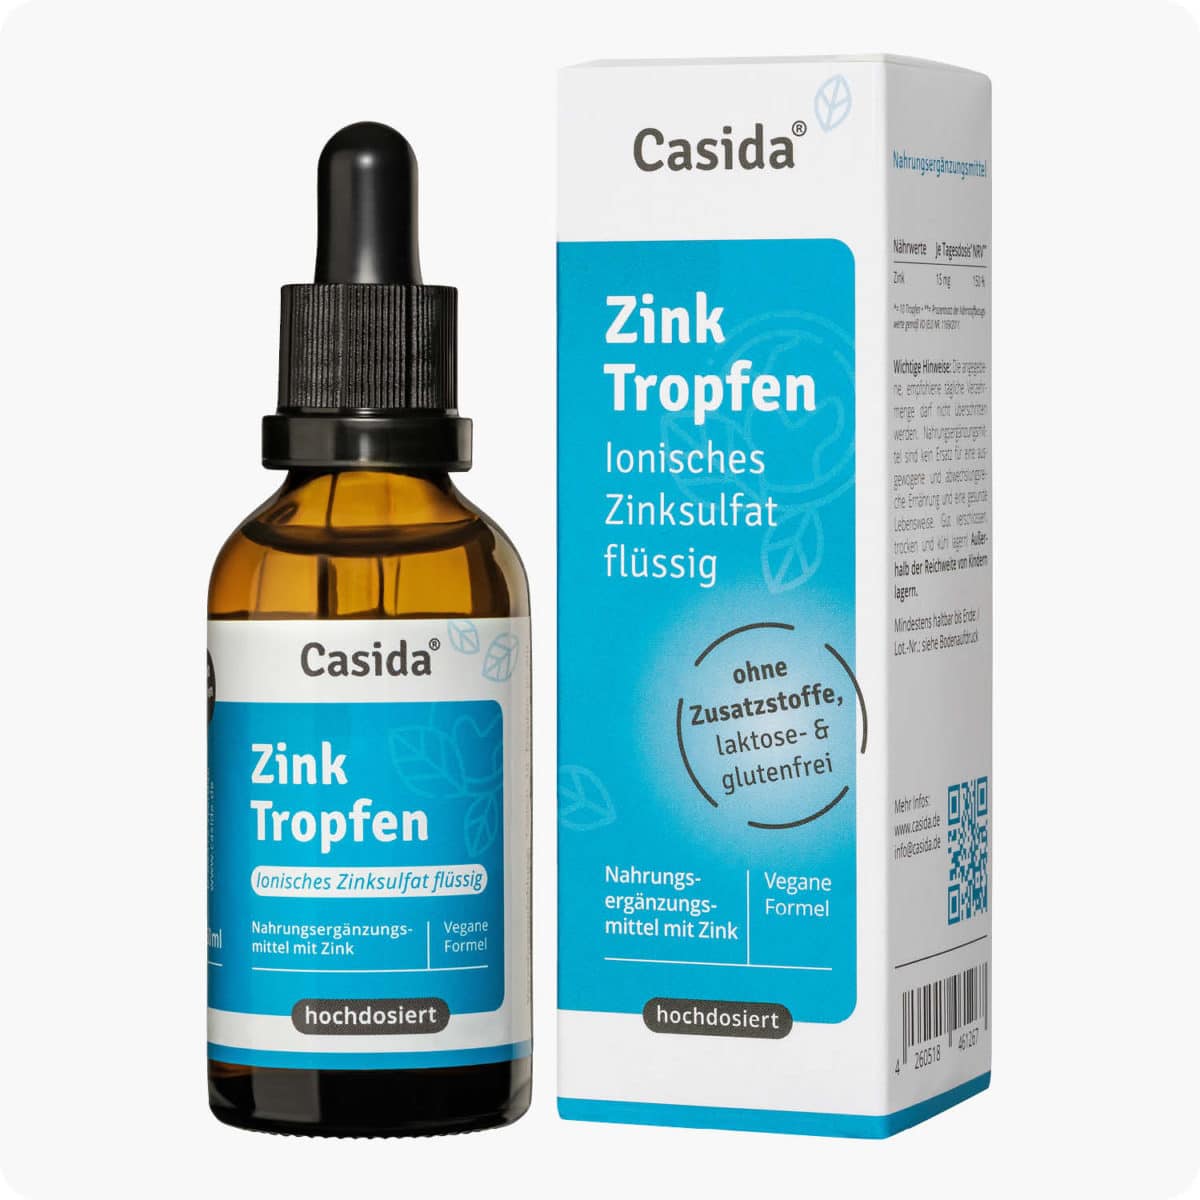 Casida Zink Tropfen - Ionisches Zinksulfat 50 ml PZN DE 18053735 UVP 14.95 € EAN